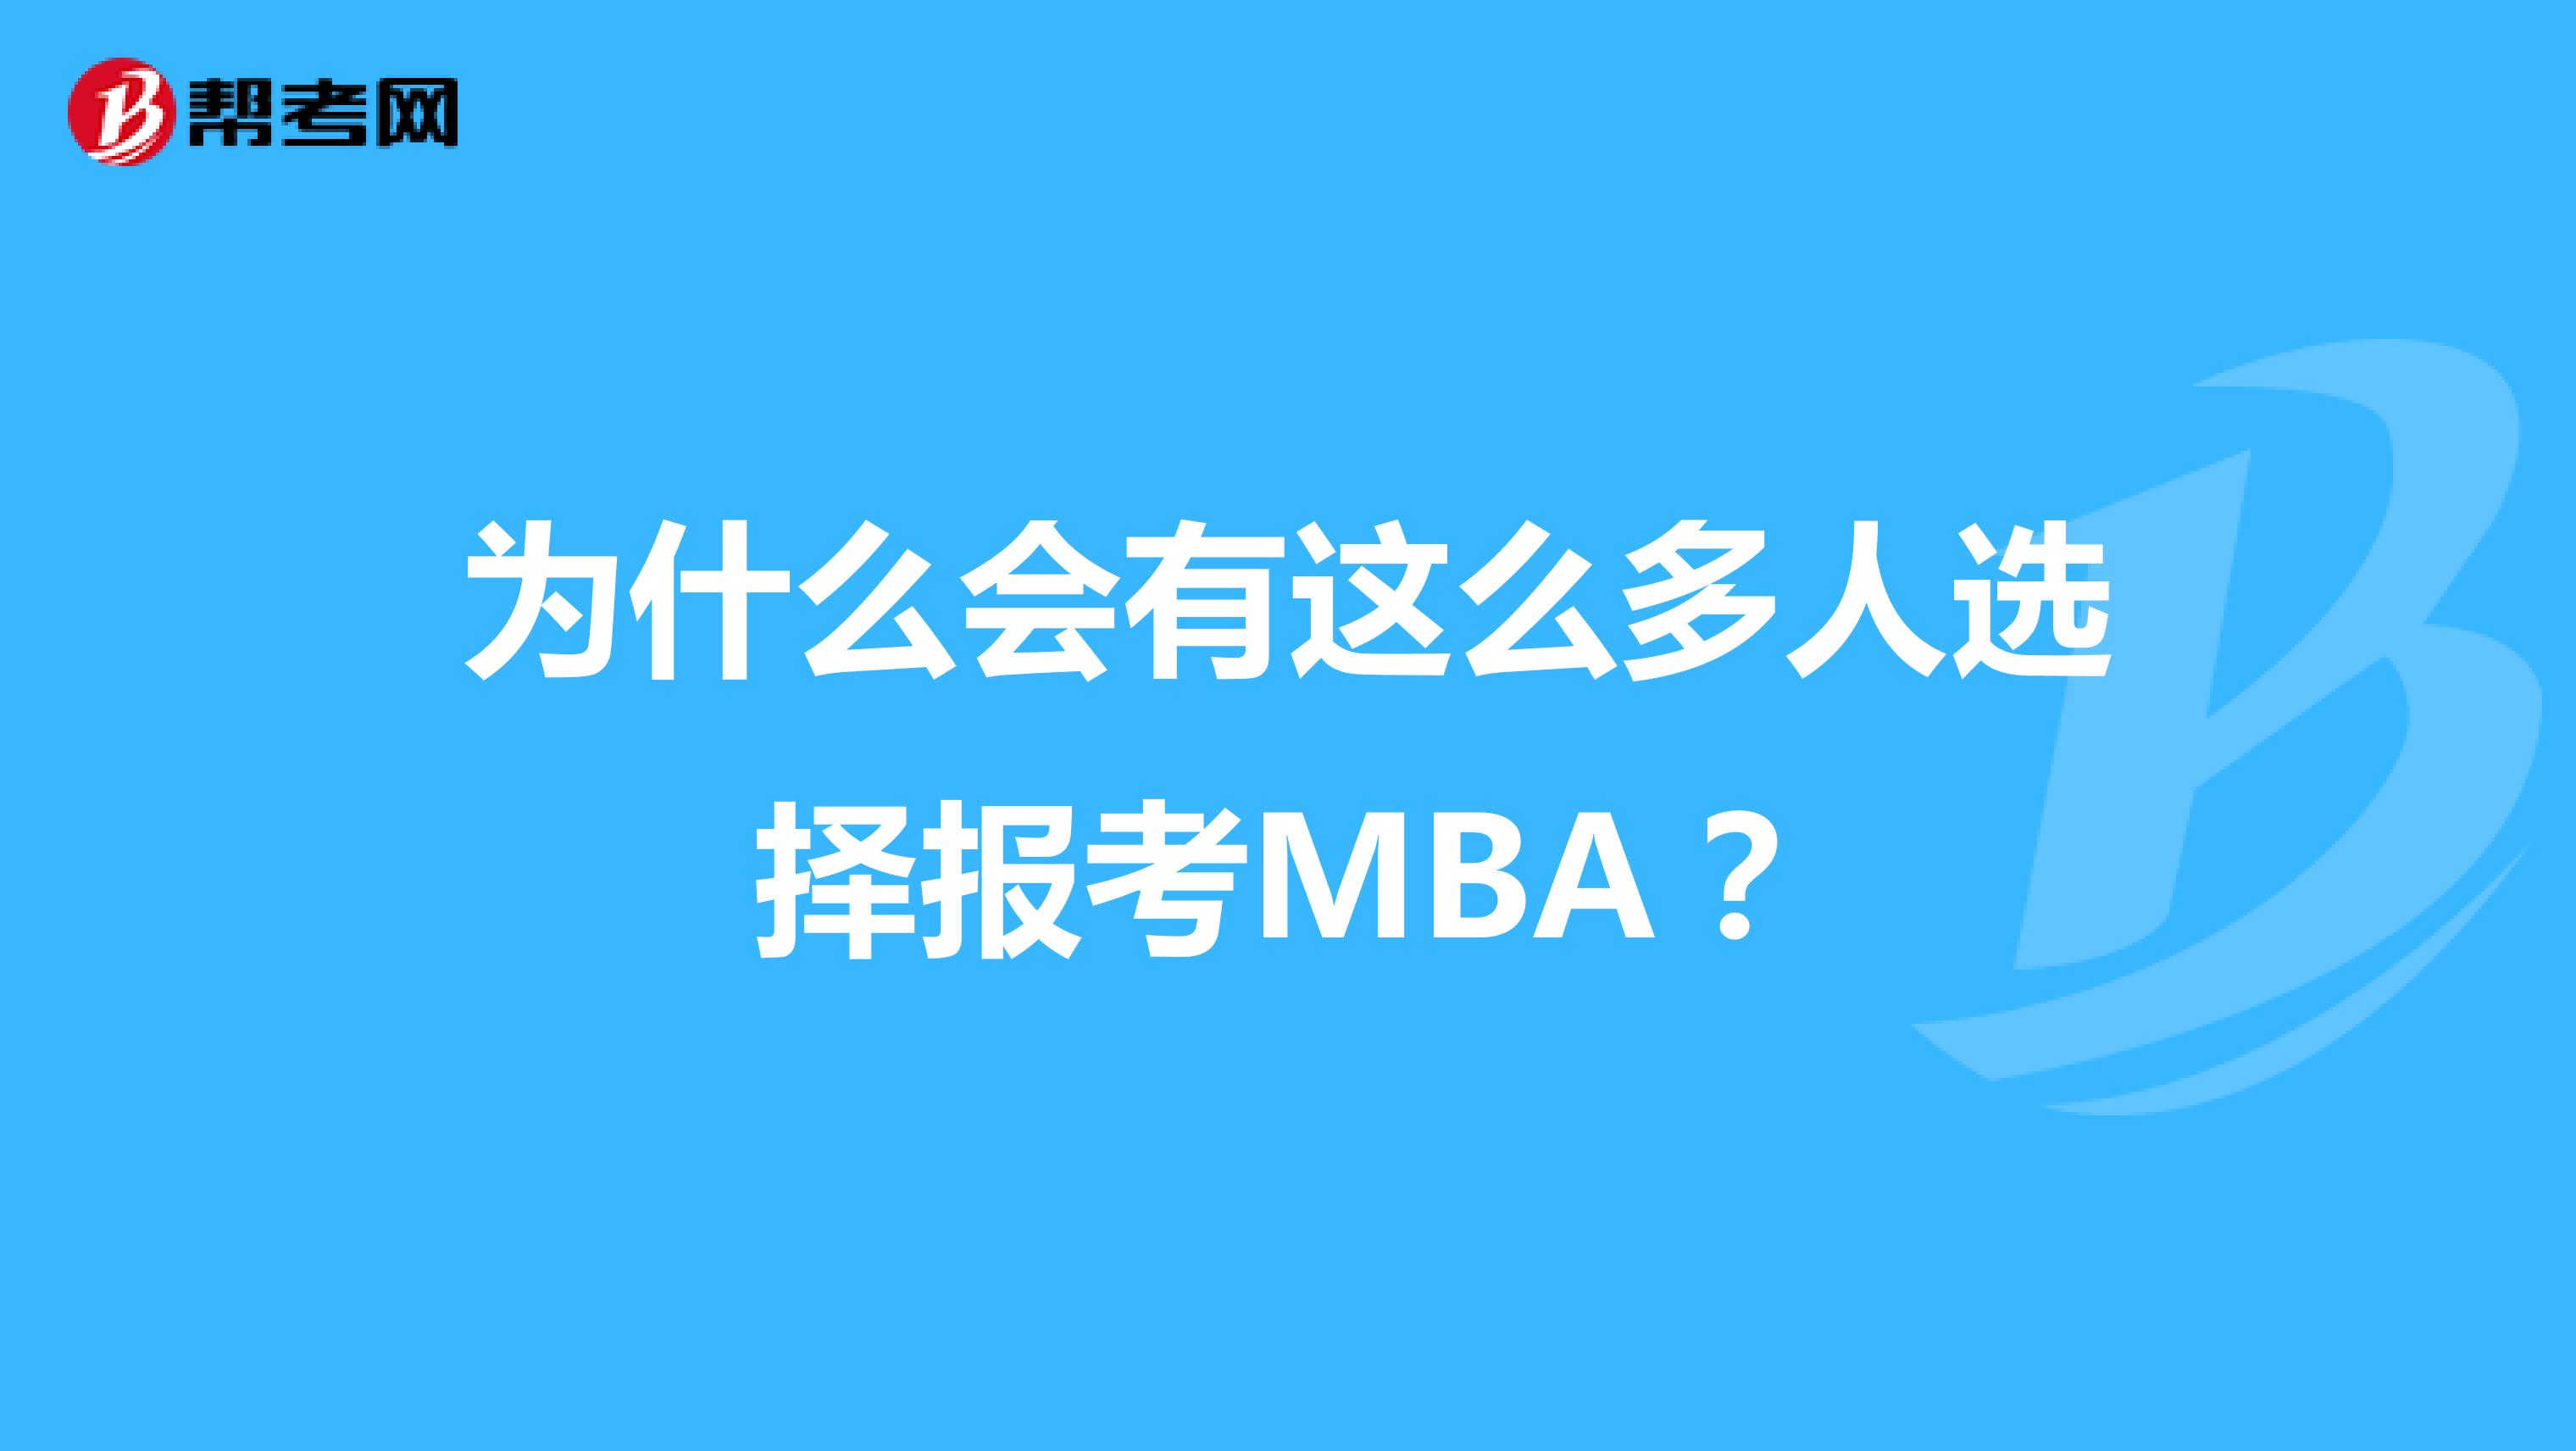 为什么会有这么多人选择报考MBA？